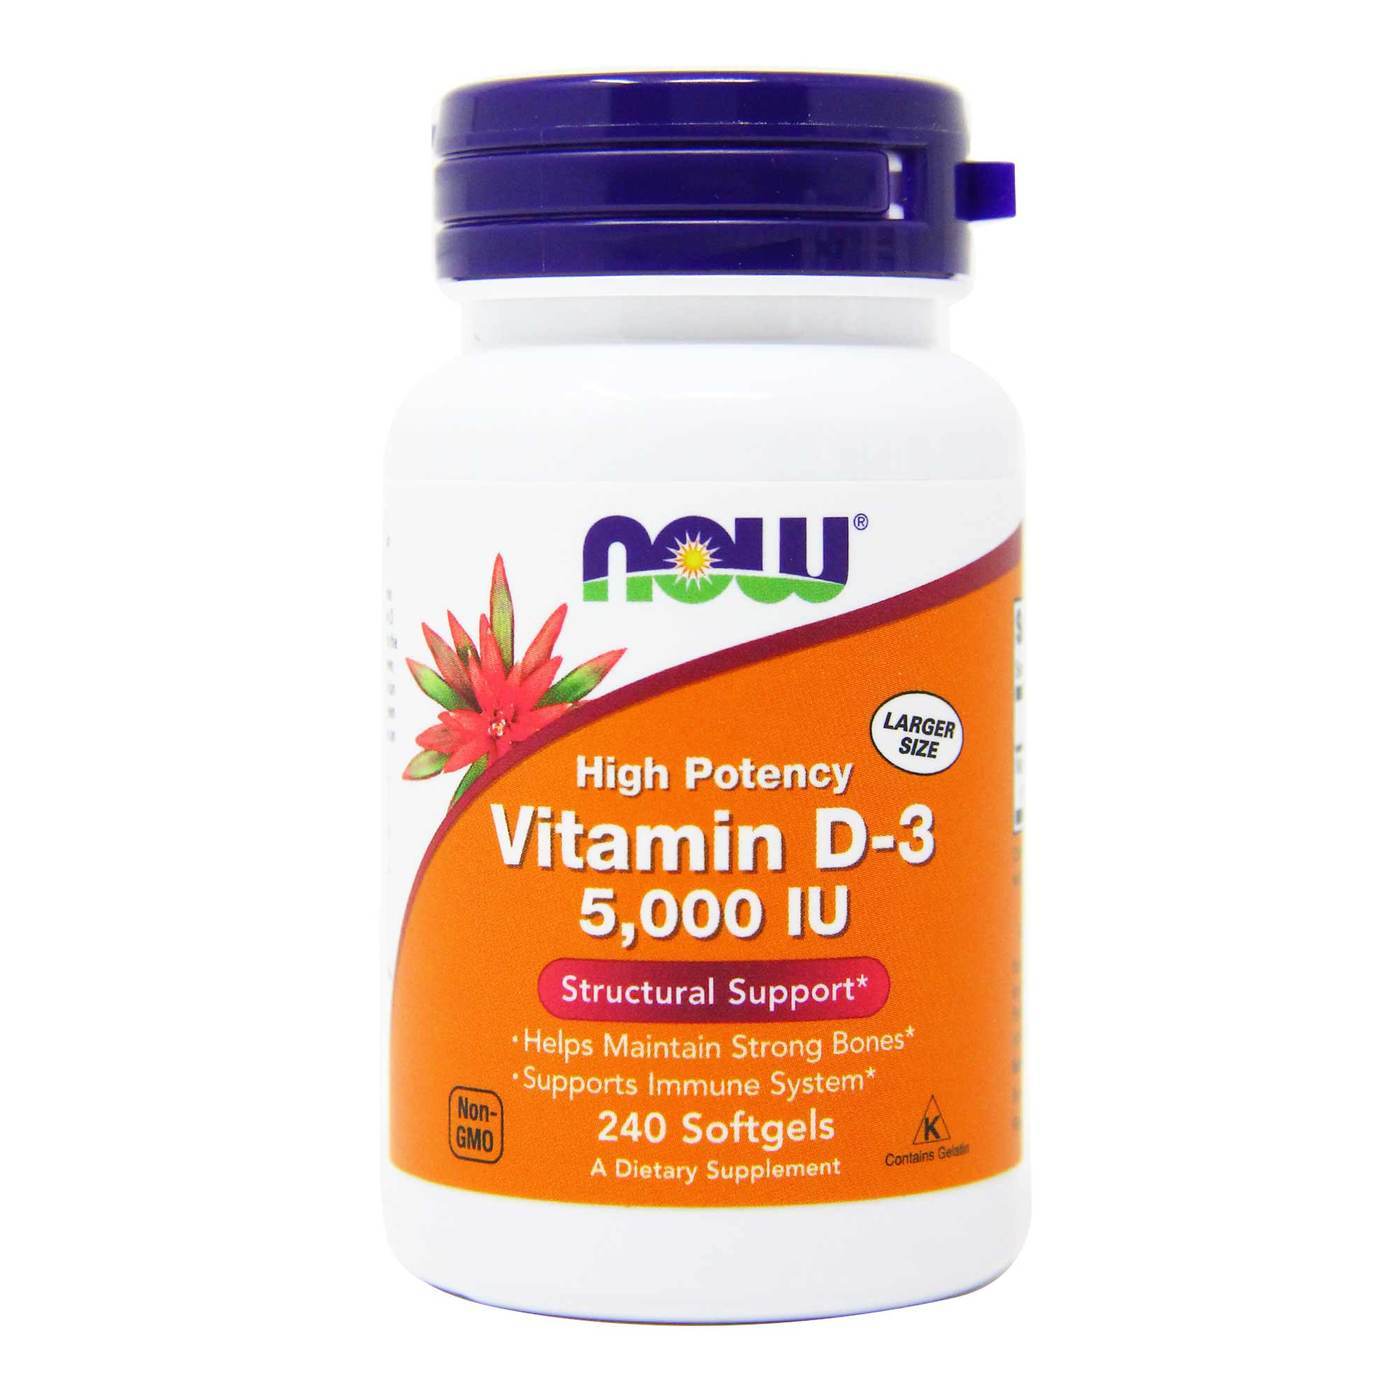 Buy Vitamin D3 Ghana, Accra, Kumasi, Takoradi | Beauty Express GH